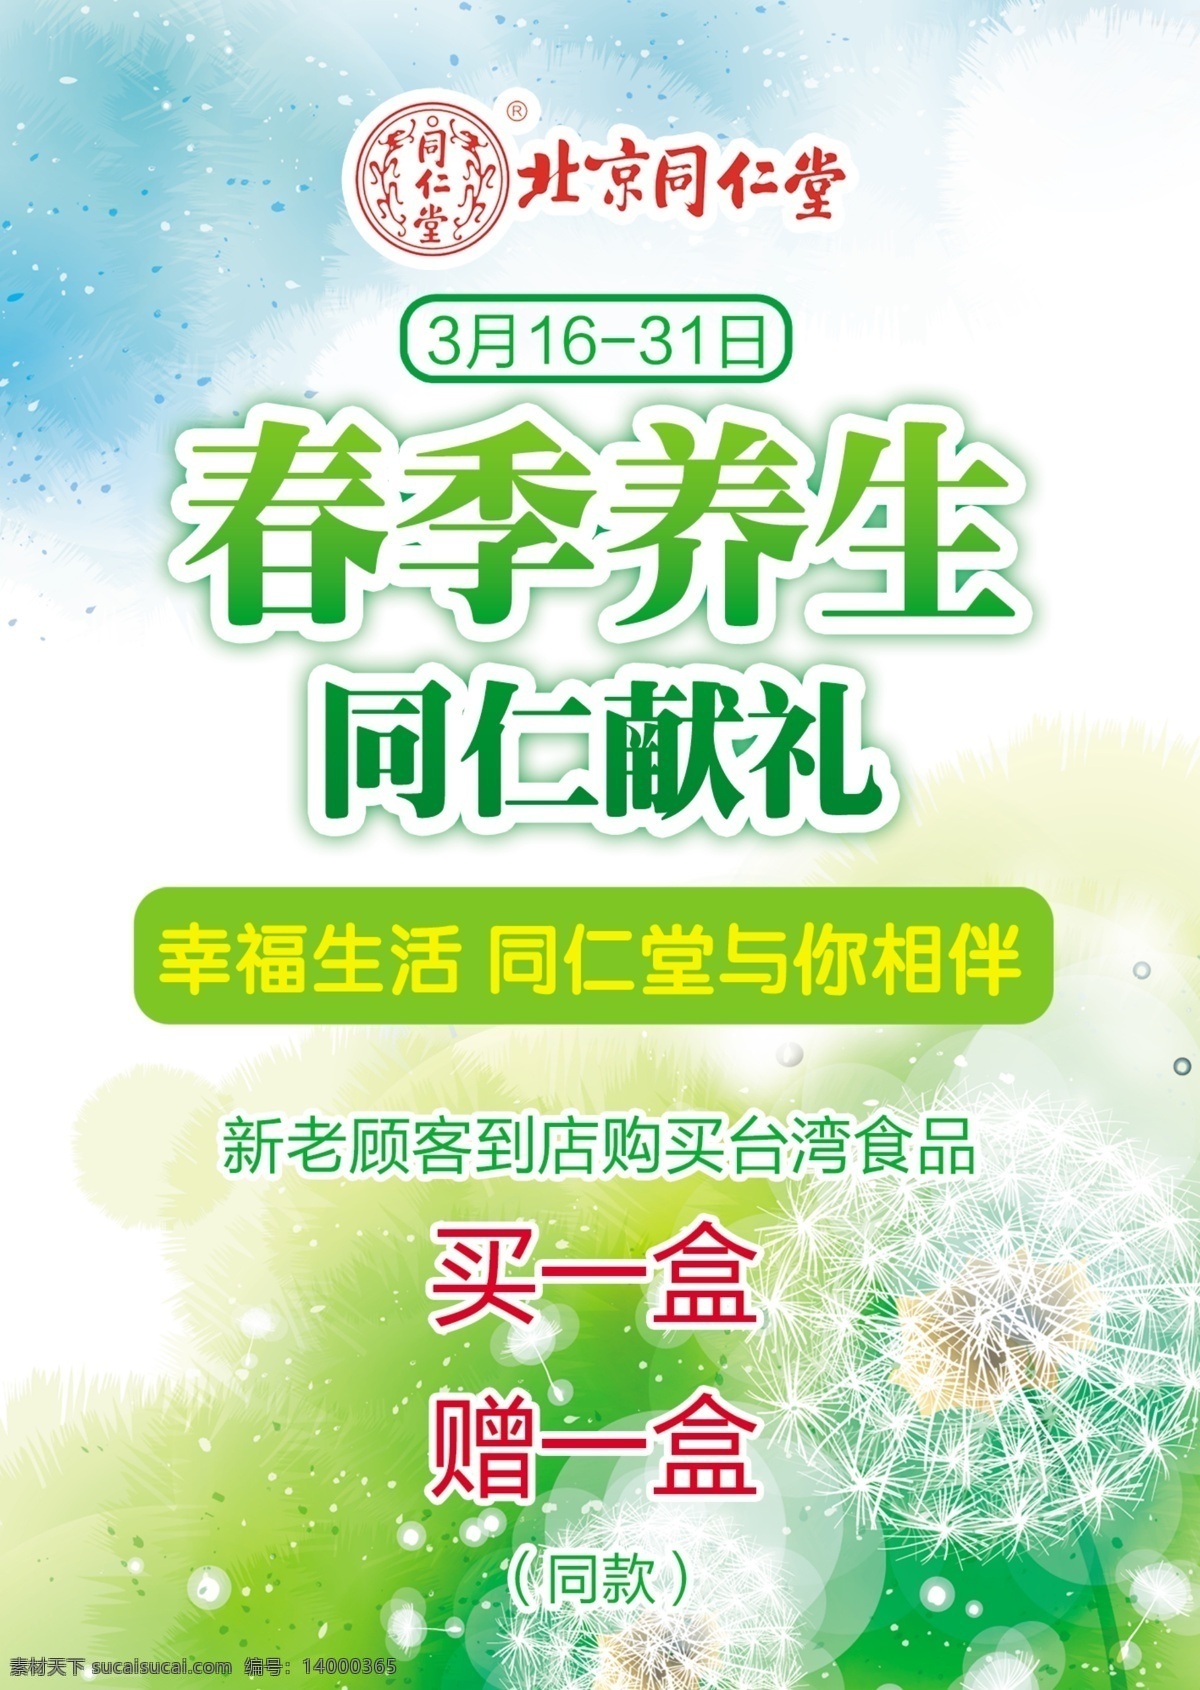 北京 同仁堂 春季 养生 海报 北京同仁堂 春季养生 活动力度 绿色背景 logo 白色